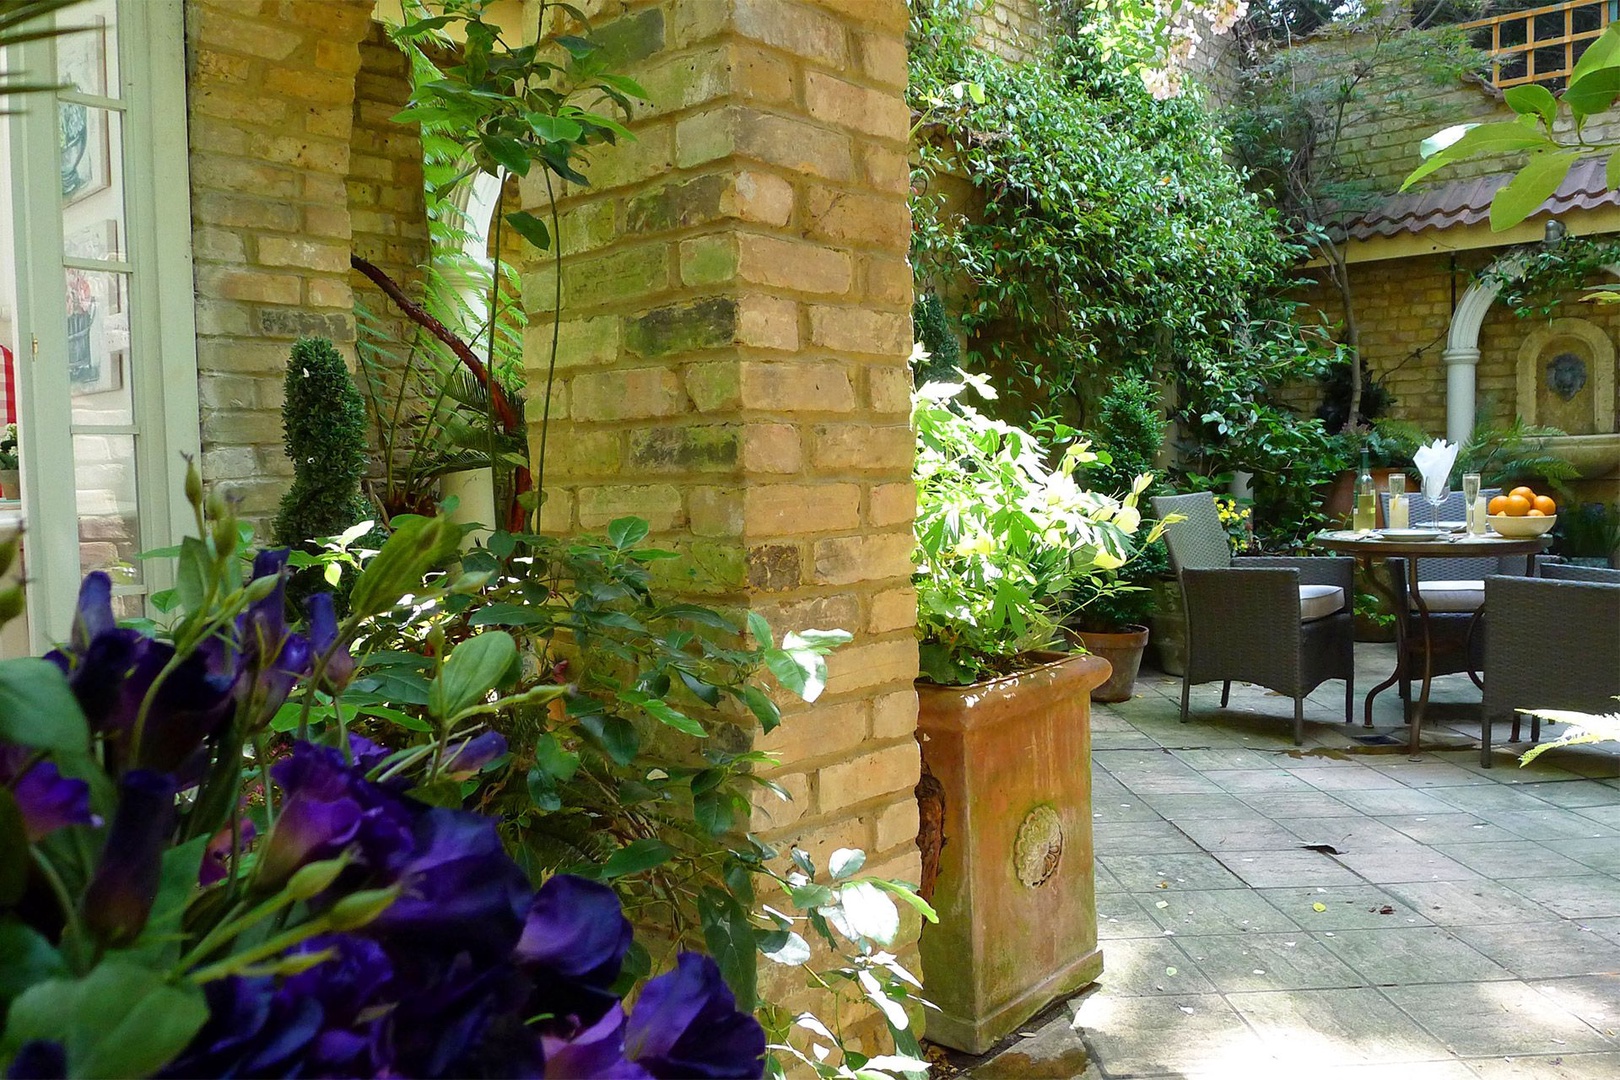 Award-winning Italian style garden